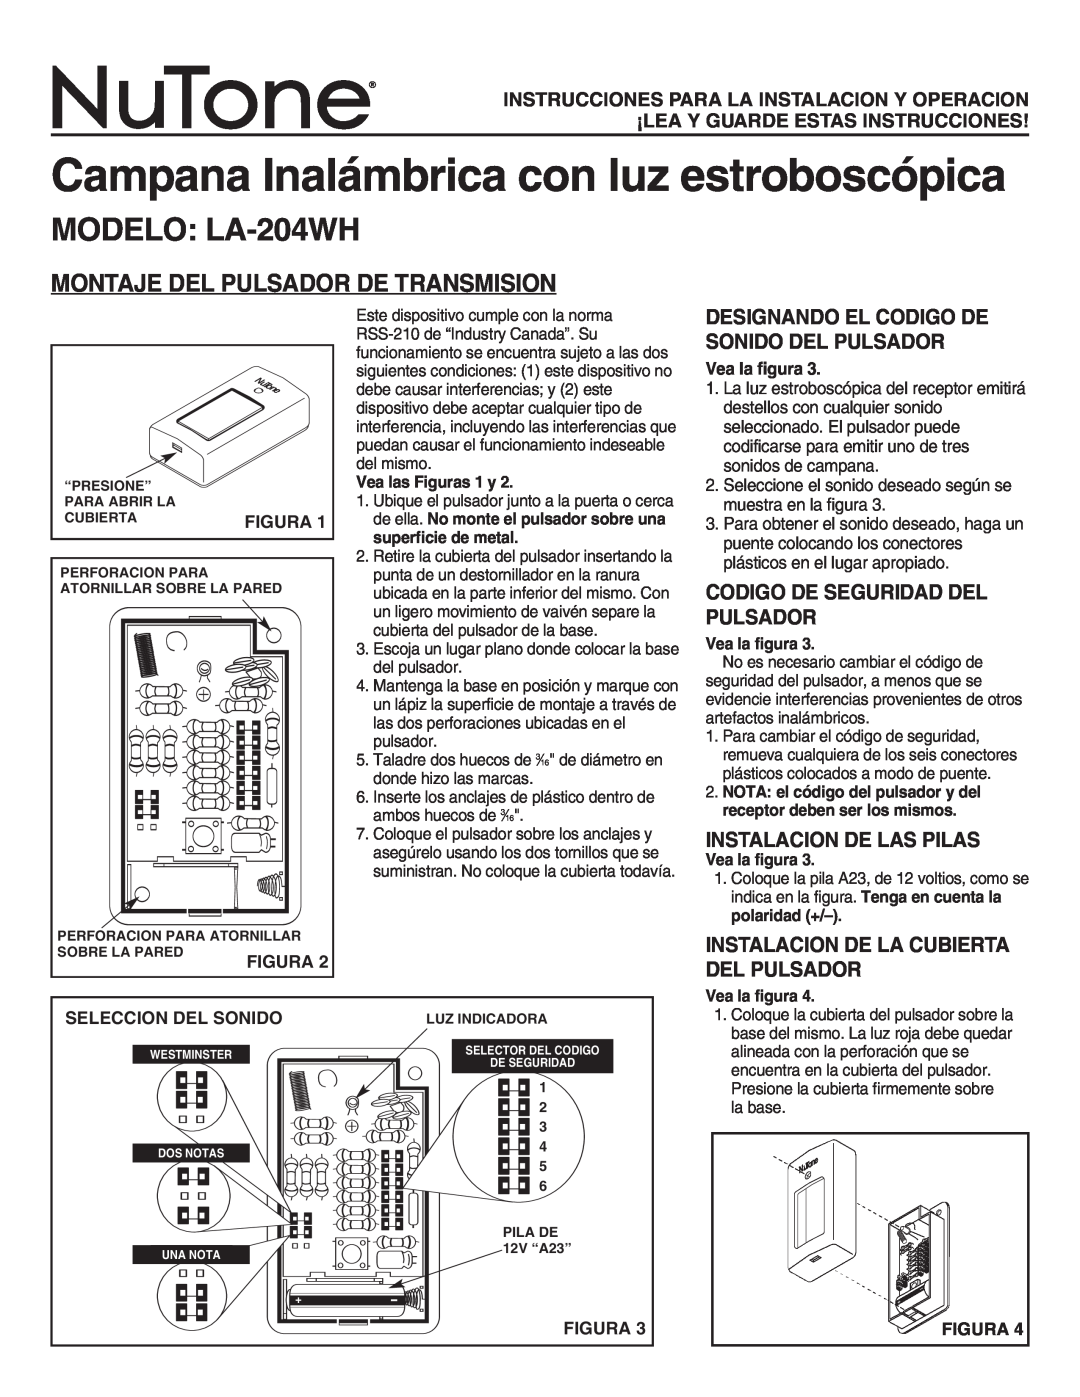 NuTone Campana Inalámbrica con luz estroboscópica, MODELO LA-204WH, Montaje Del Pulsador De Transmision, Figura 